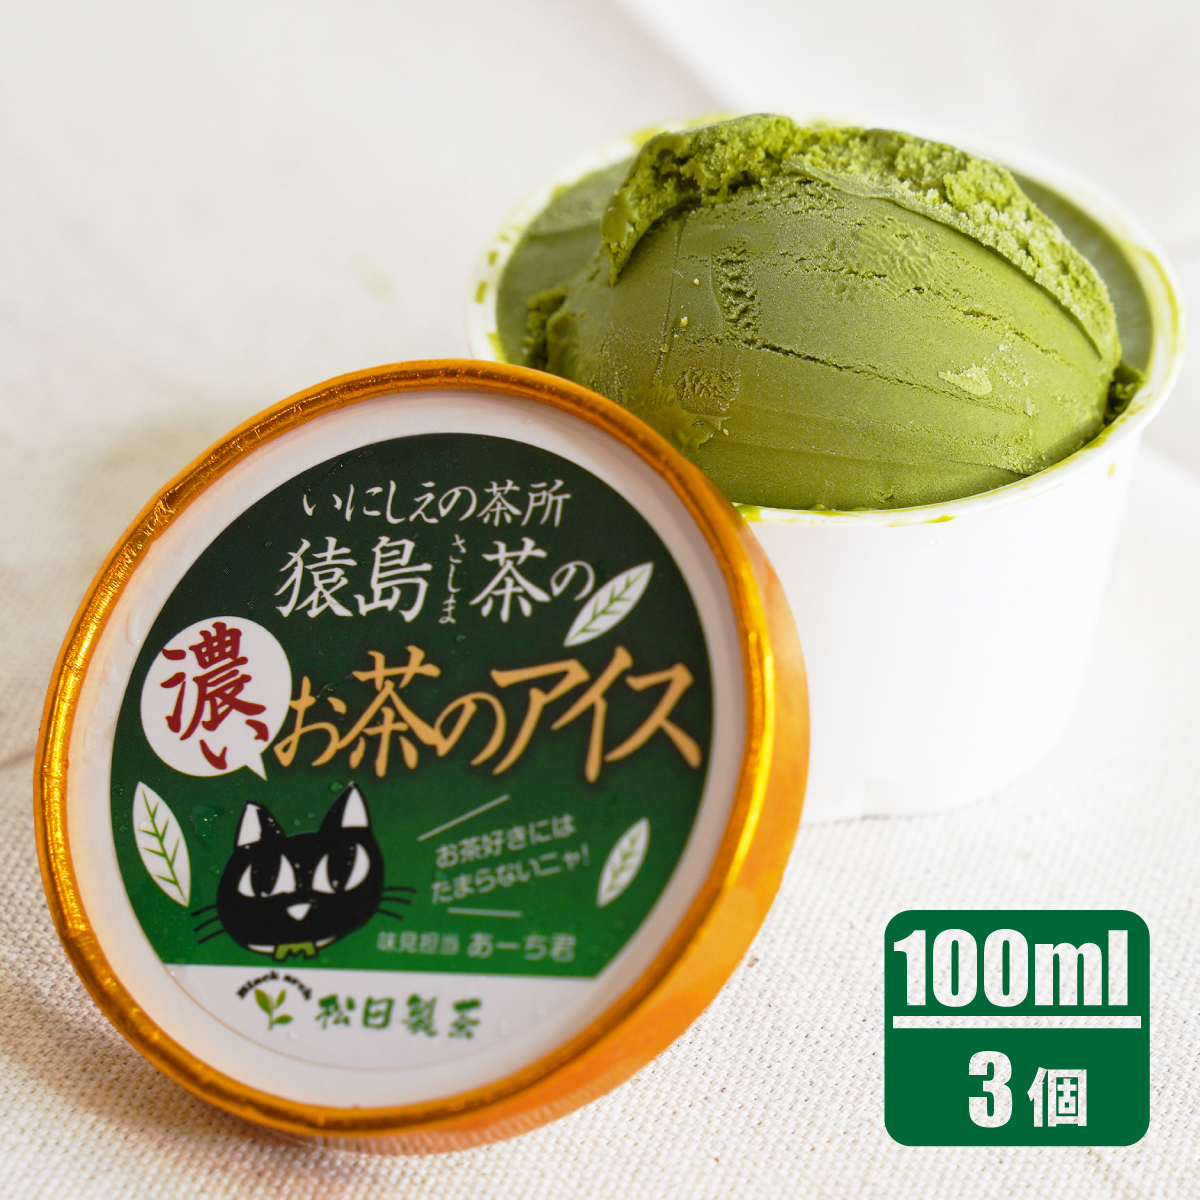 猿島茶の濃いお茶のアイス/100ml(3個)